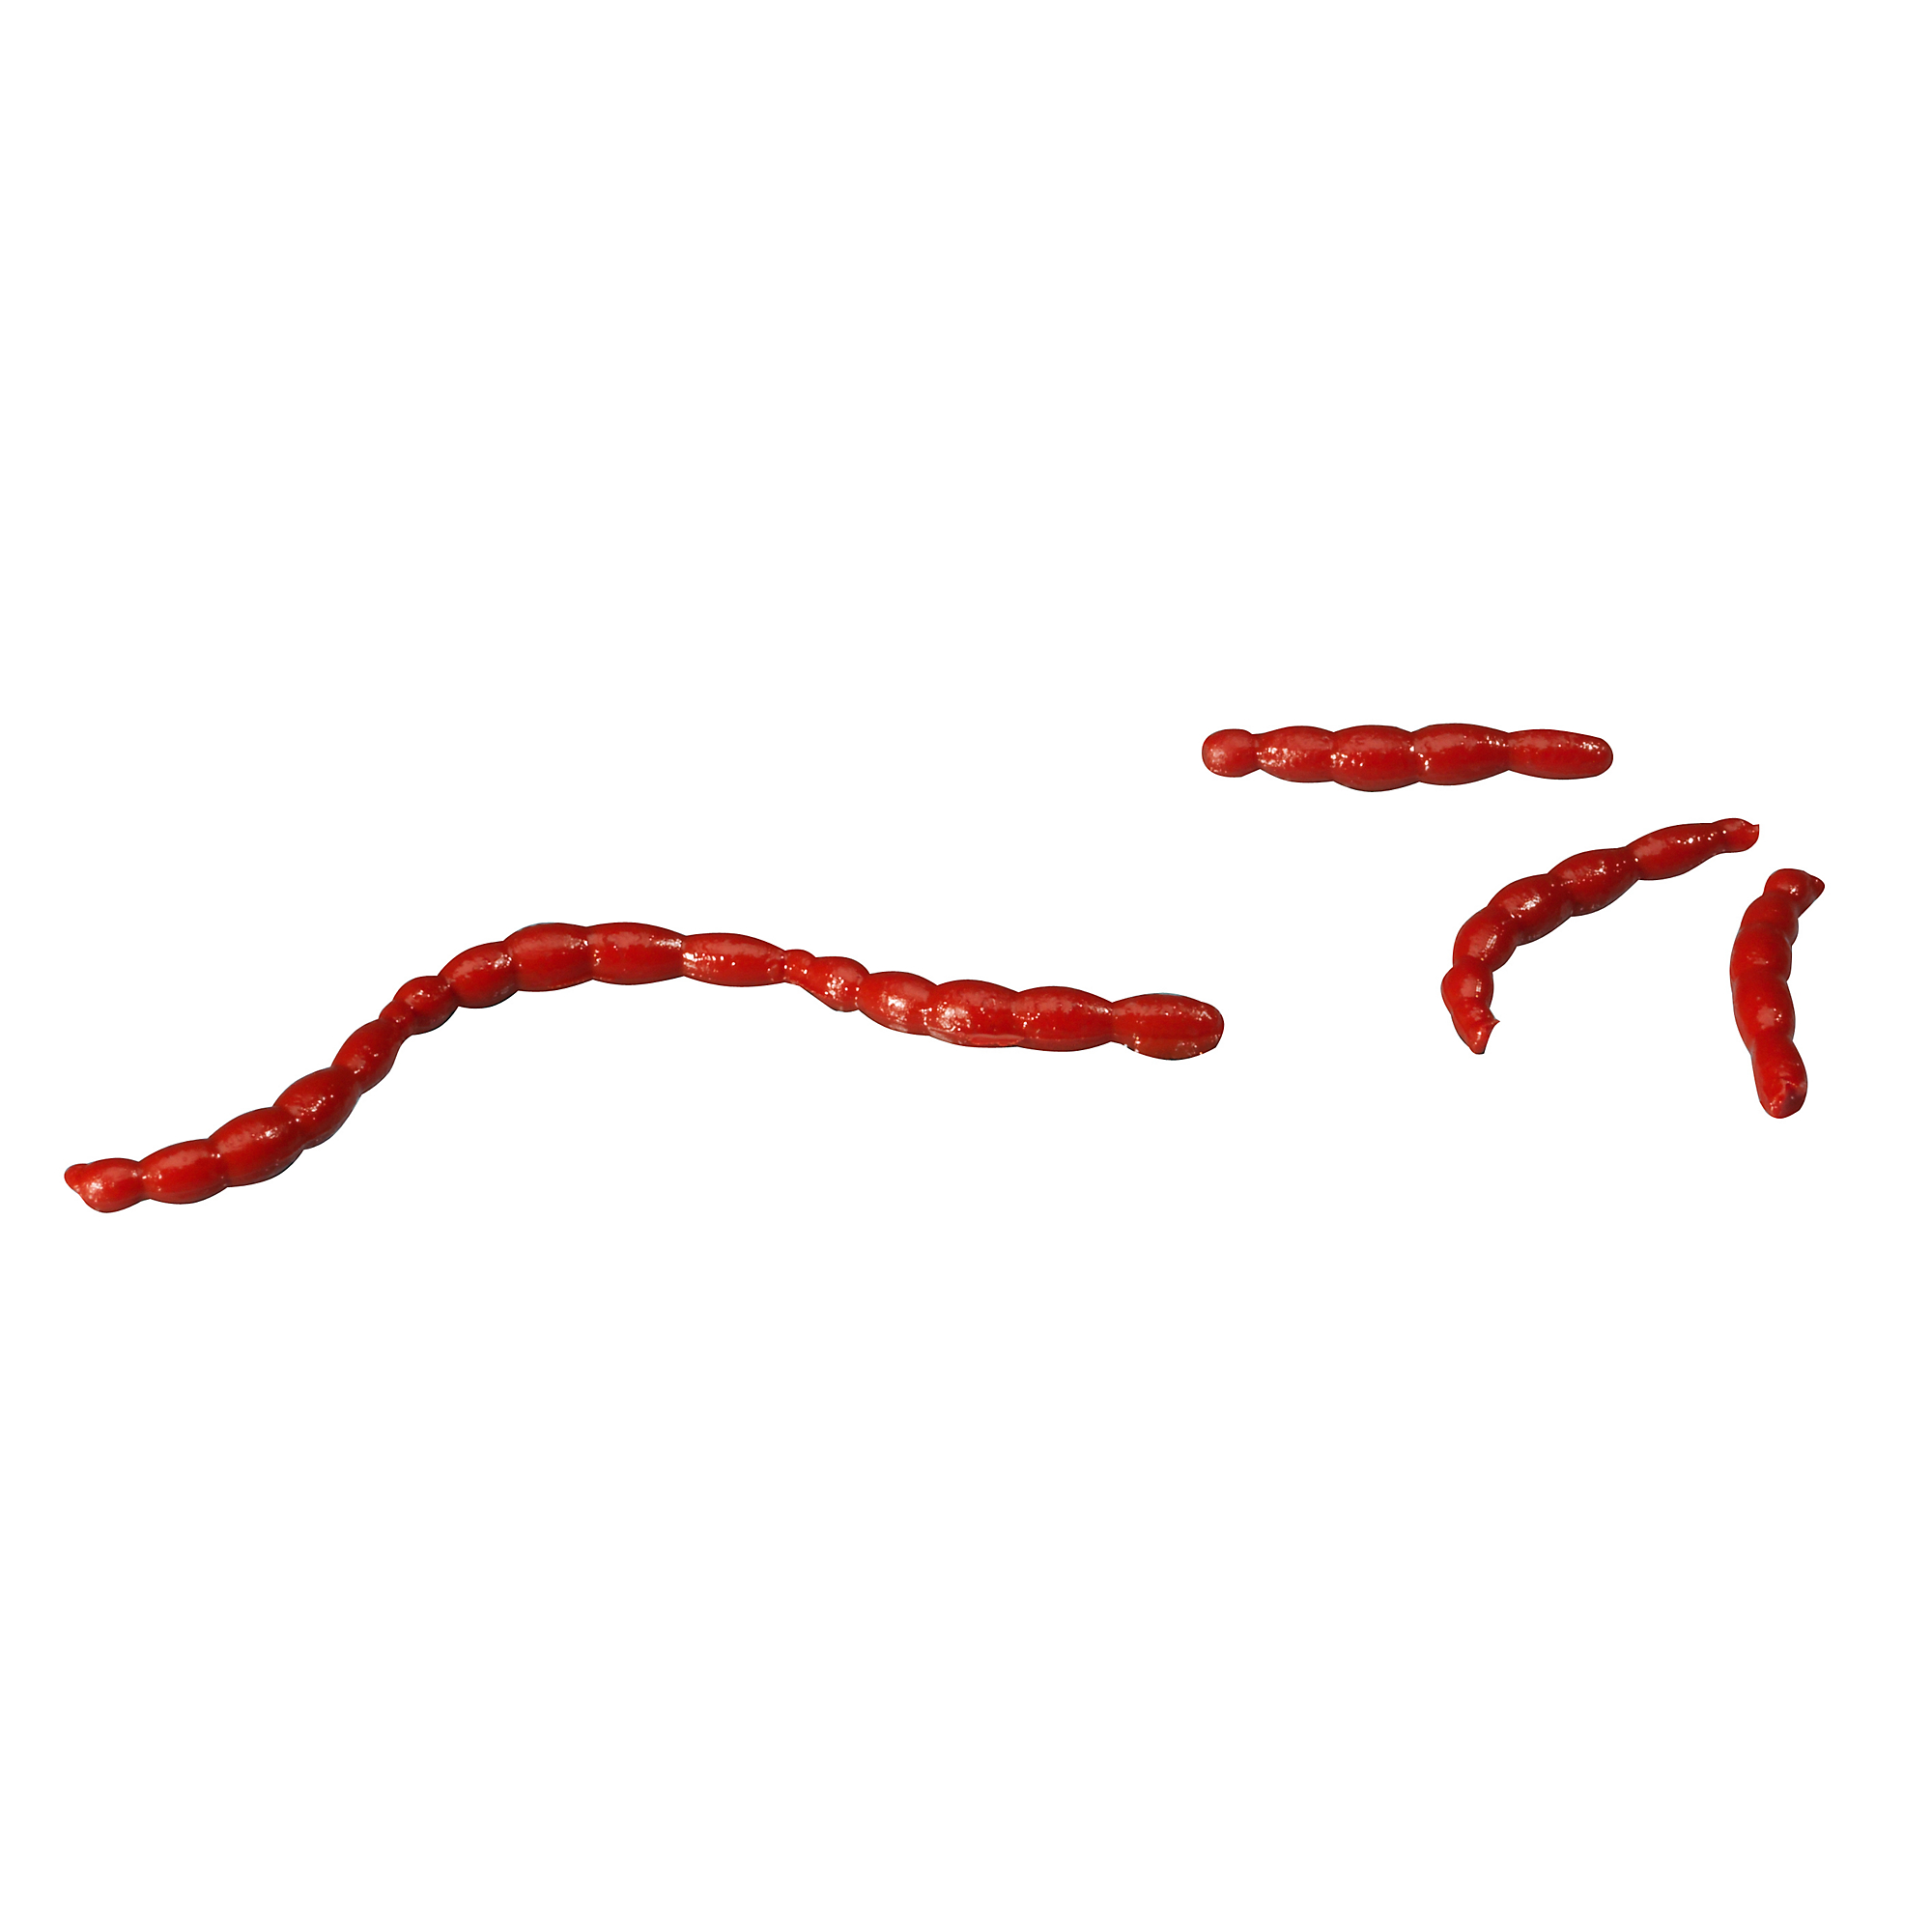 Berkley - Gulp! Earthworm Red Wiggler